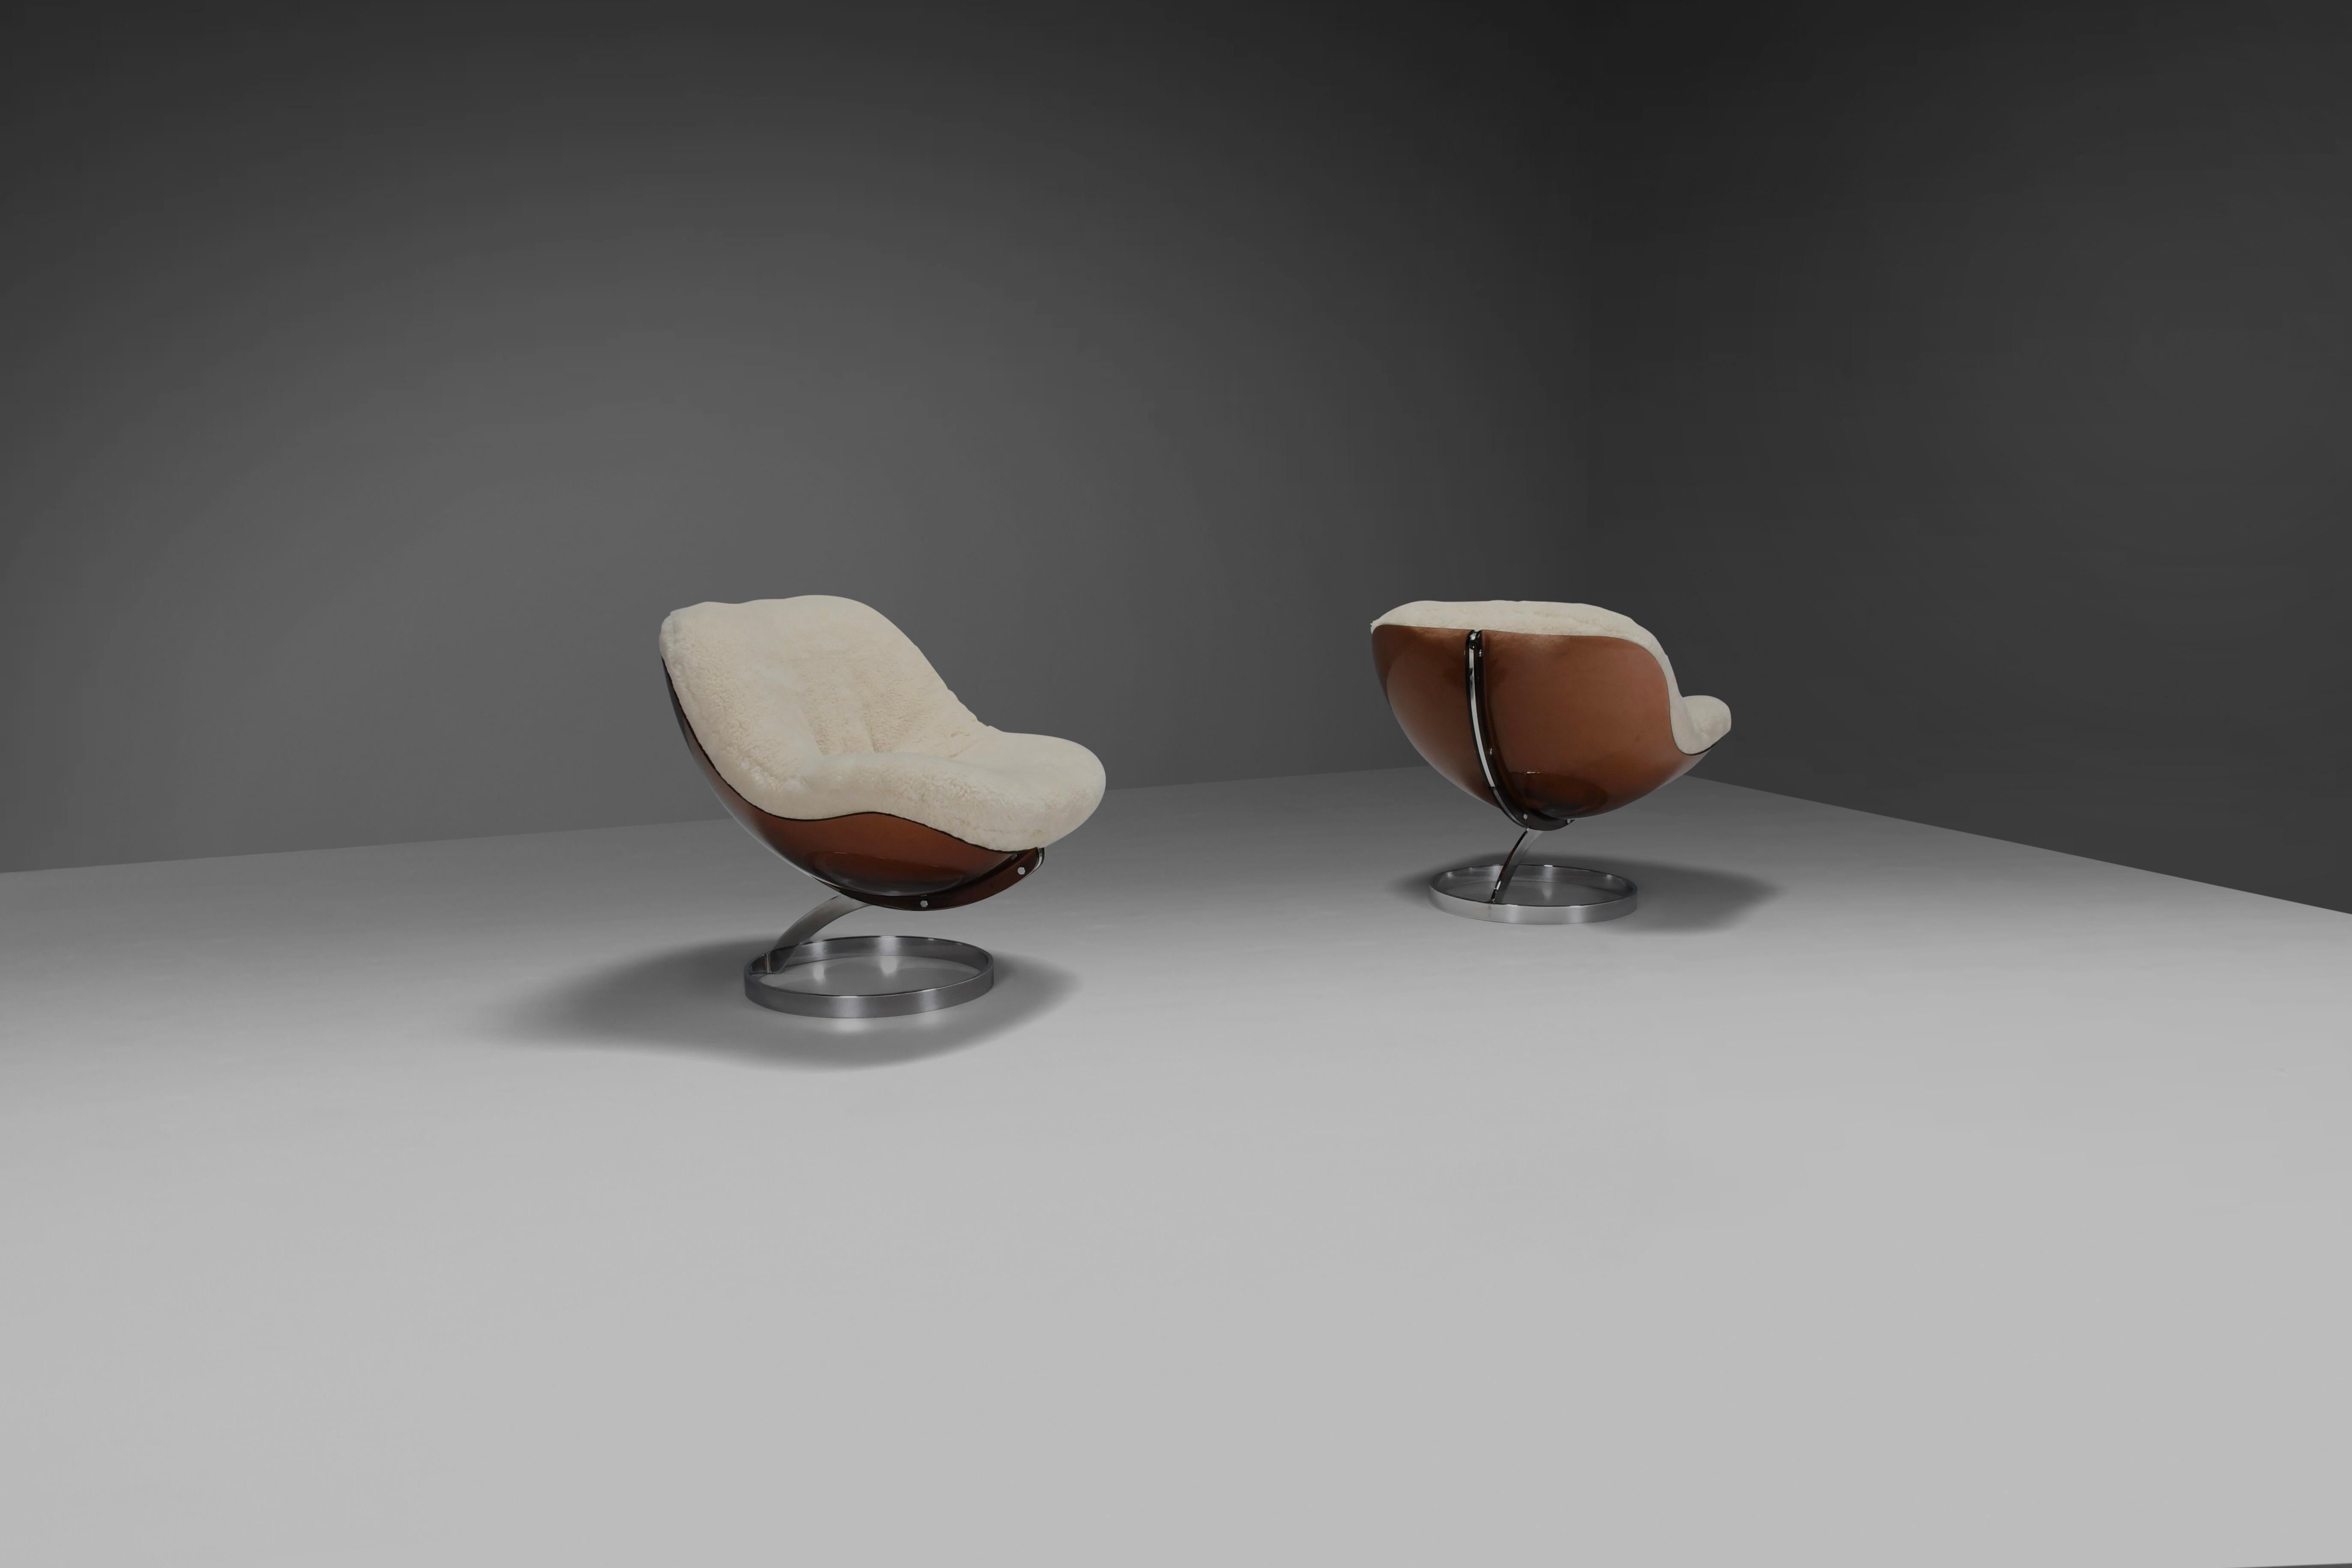 Set von schönen und seltenen 'Sphere' Lounge Stühlen in sehr gutem Zustand.

Entworfen von Boris Tabacoff im Jahr 1971

Hergestellt von der französischen Fabrik MMM. (Mobilier Modular Moderne)

Diese Stühle haben eine charakteristische braune